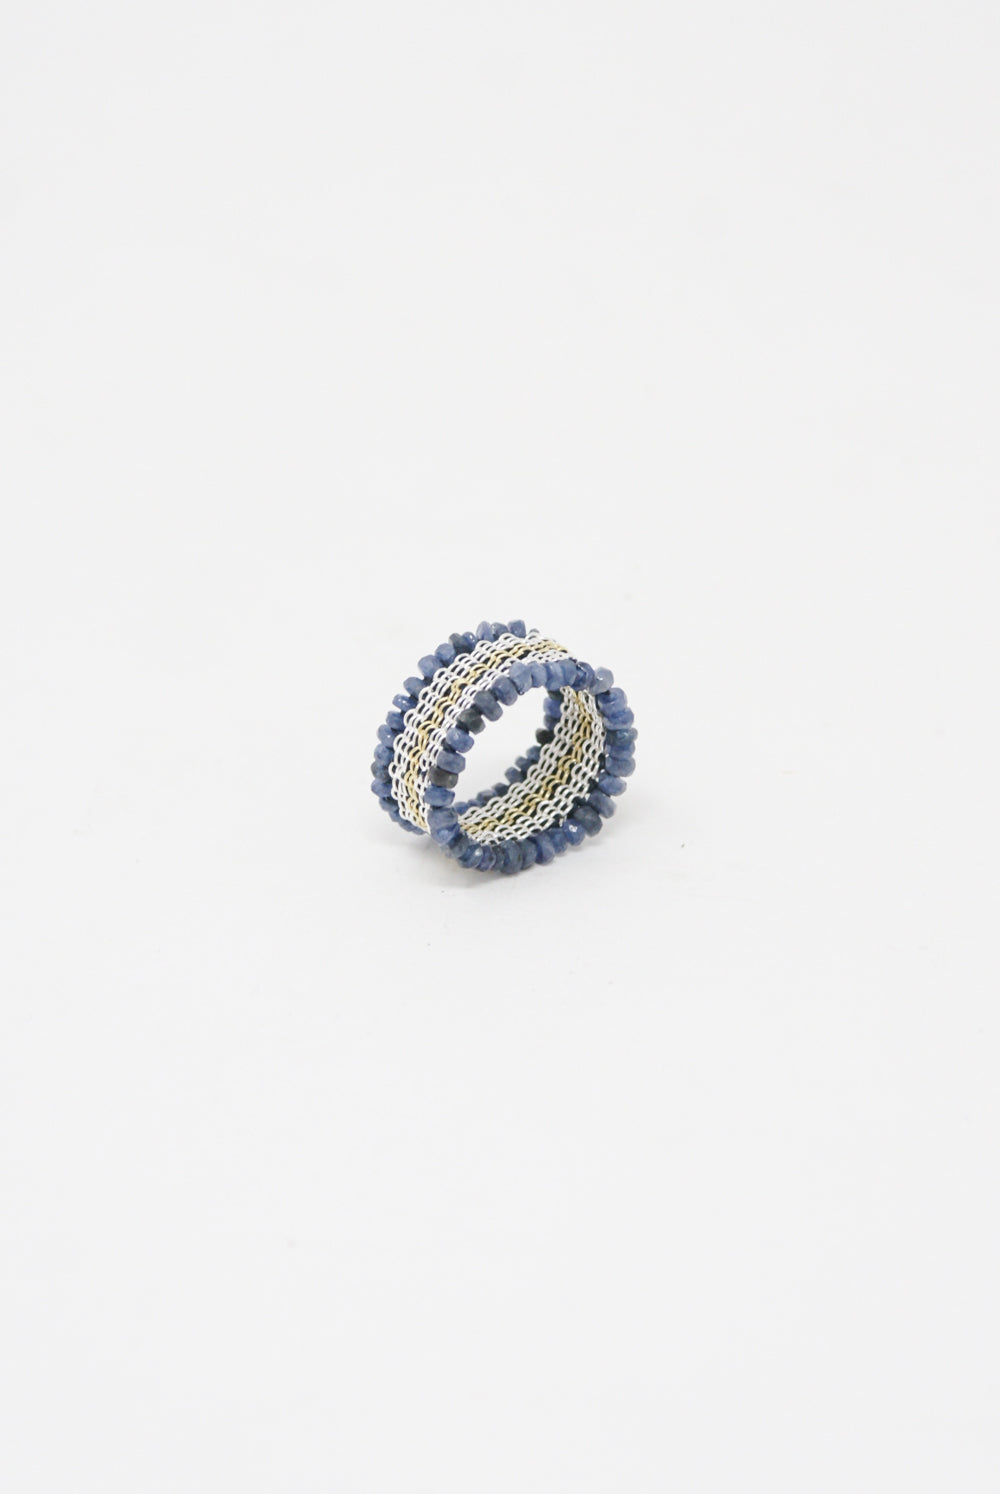 Stephanie Schneider Silver, Silk, Blue Sapphire Ring